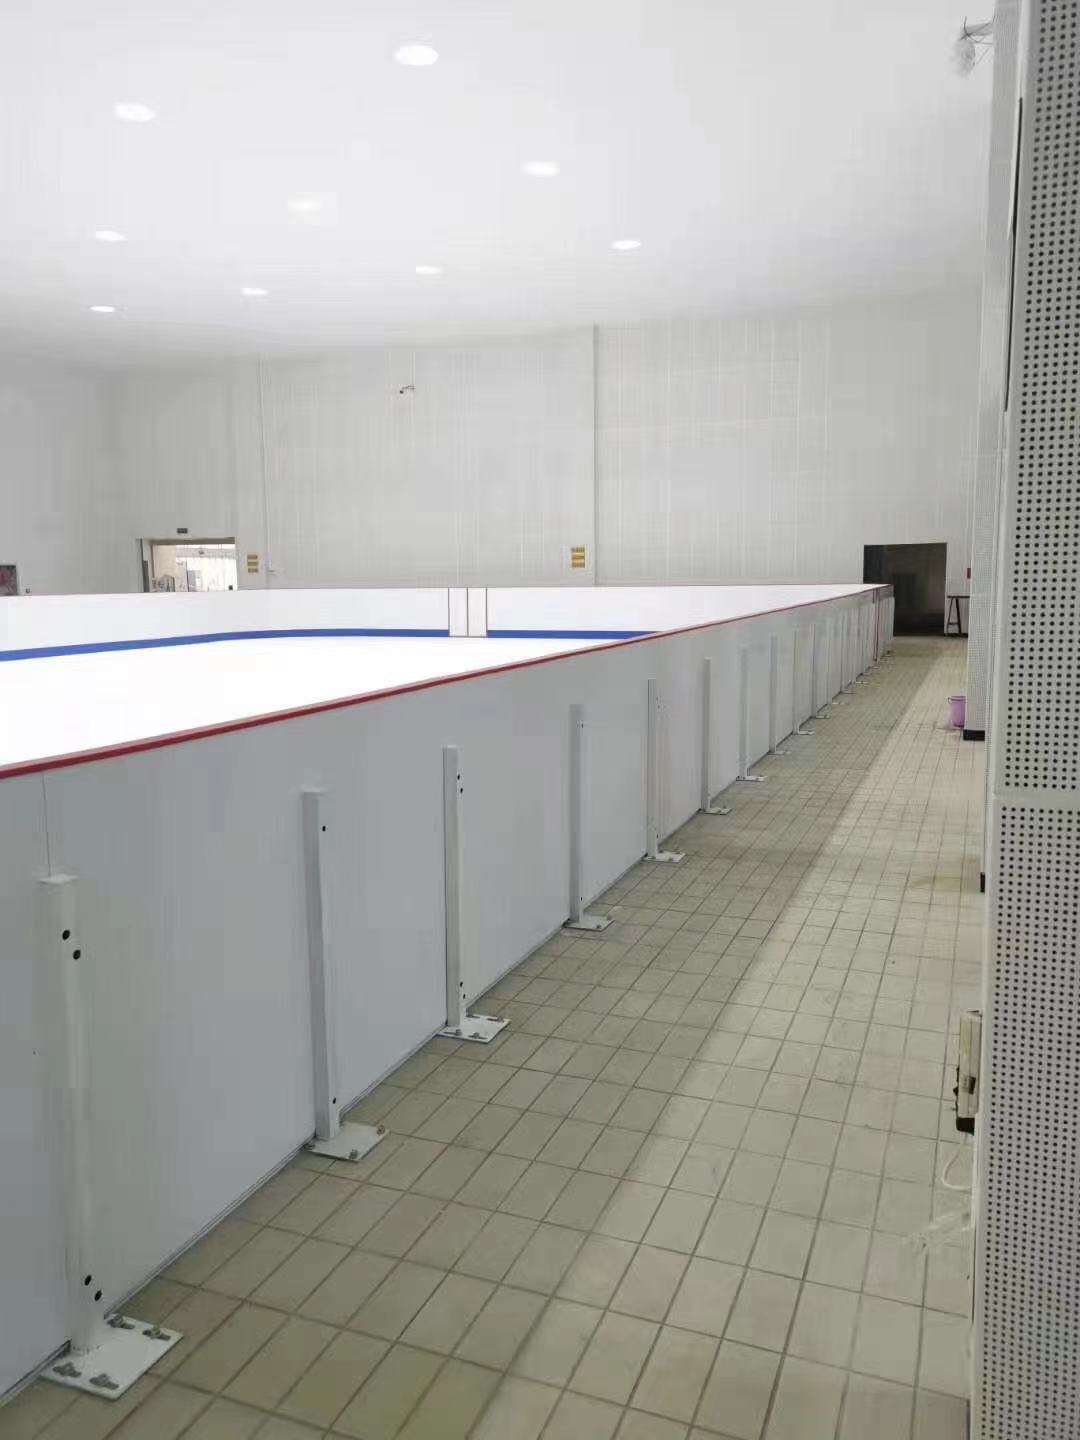 人造冰场厂家-符合标准溜冰场